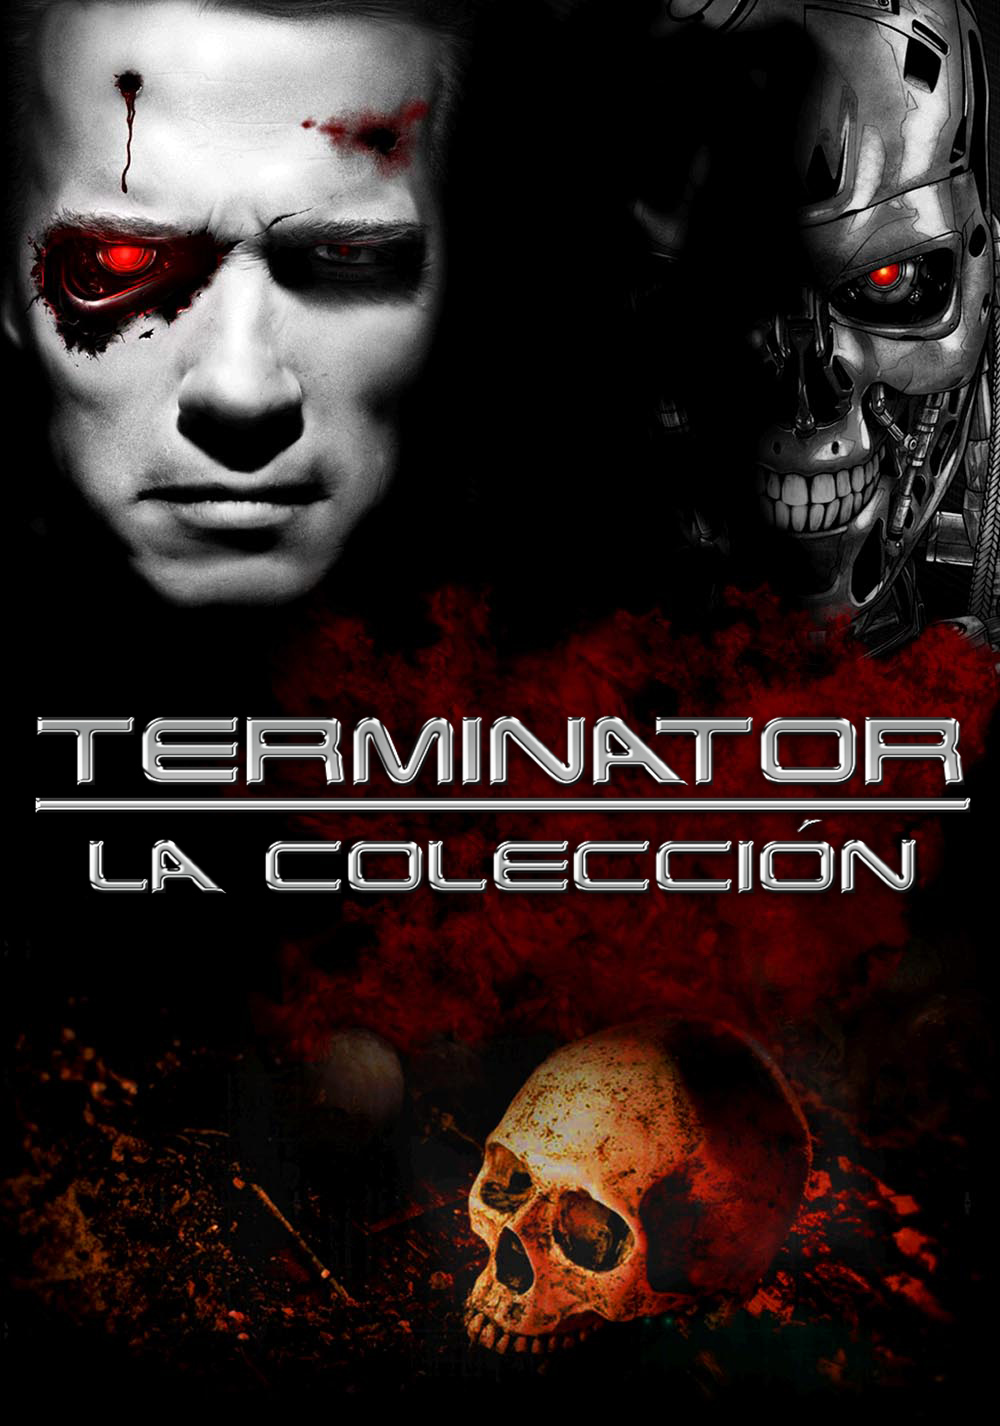  The Terminator Collection คนเหล็ก